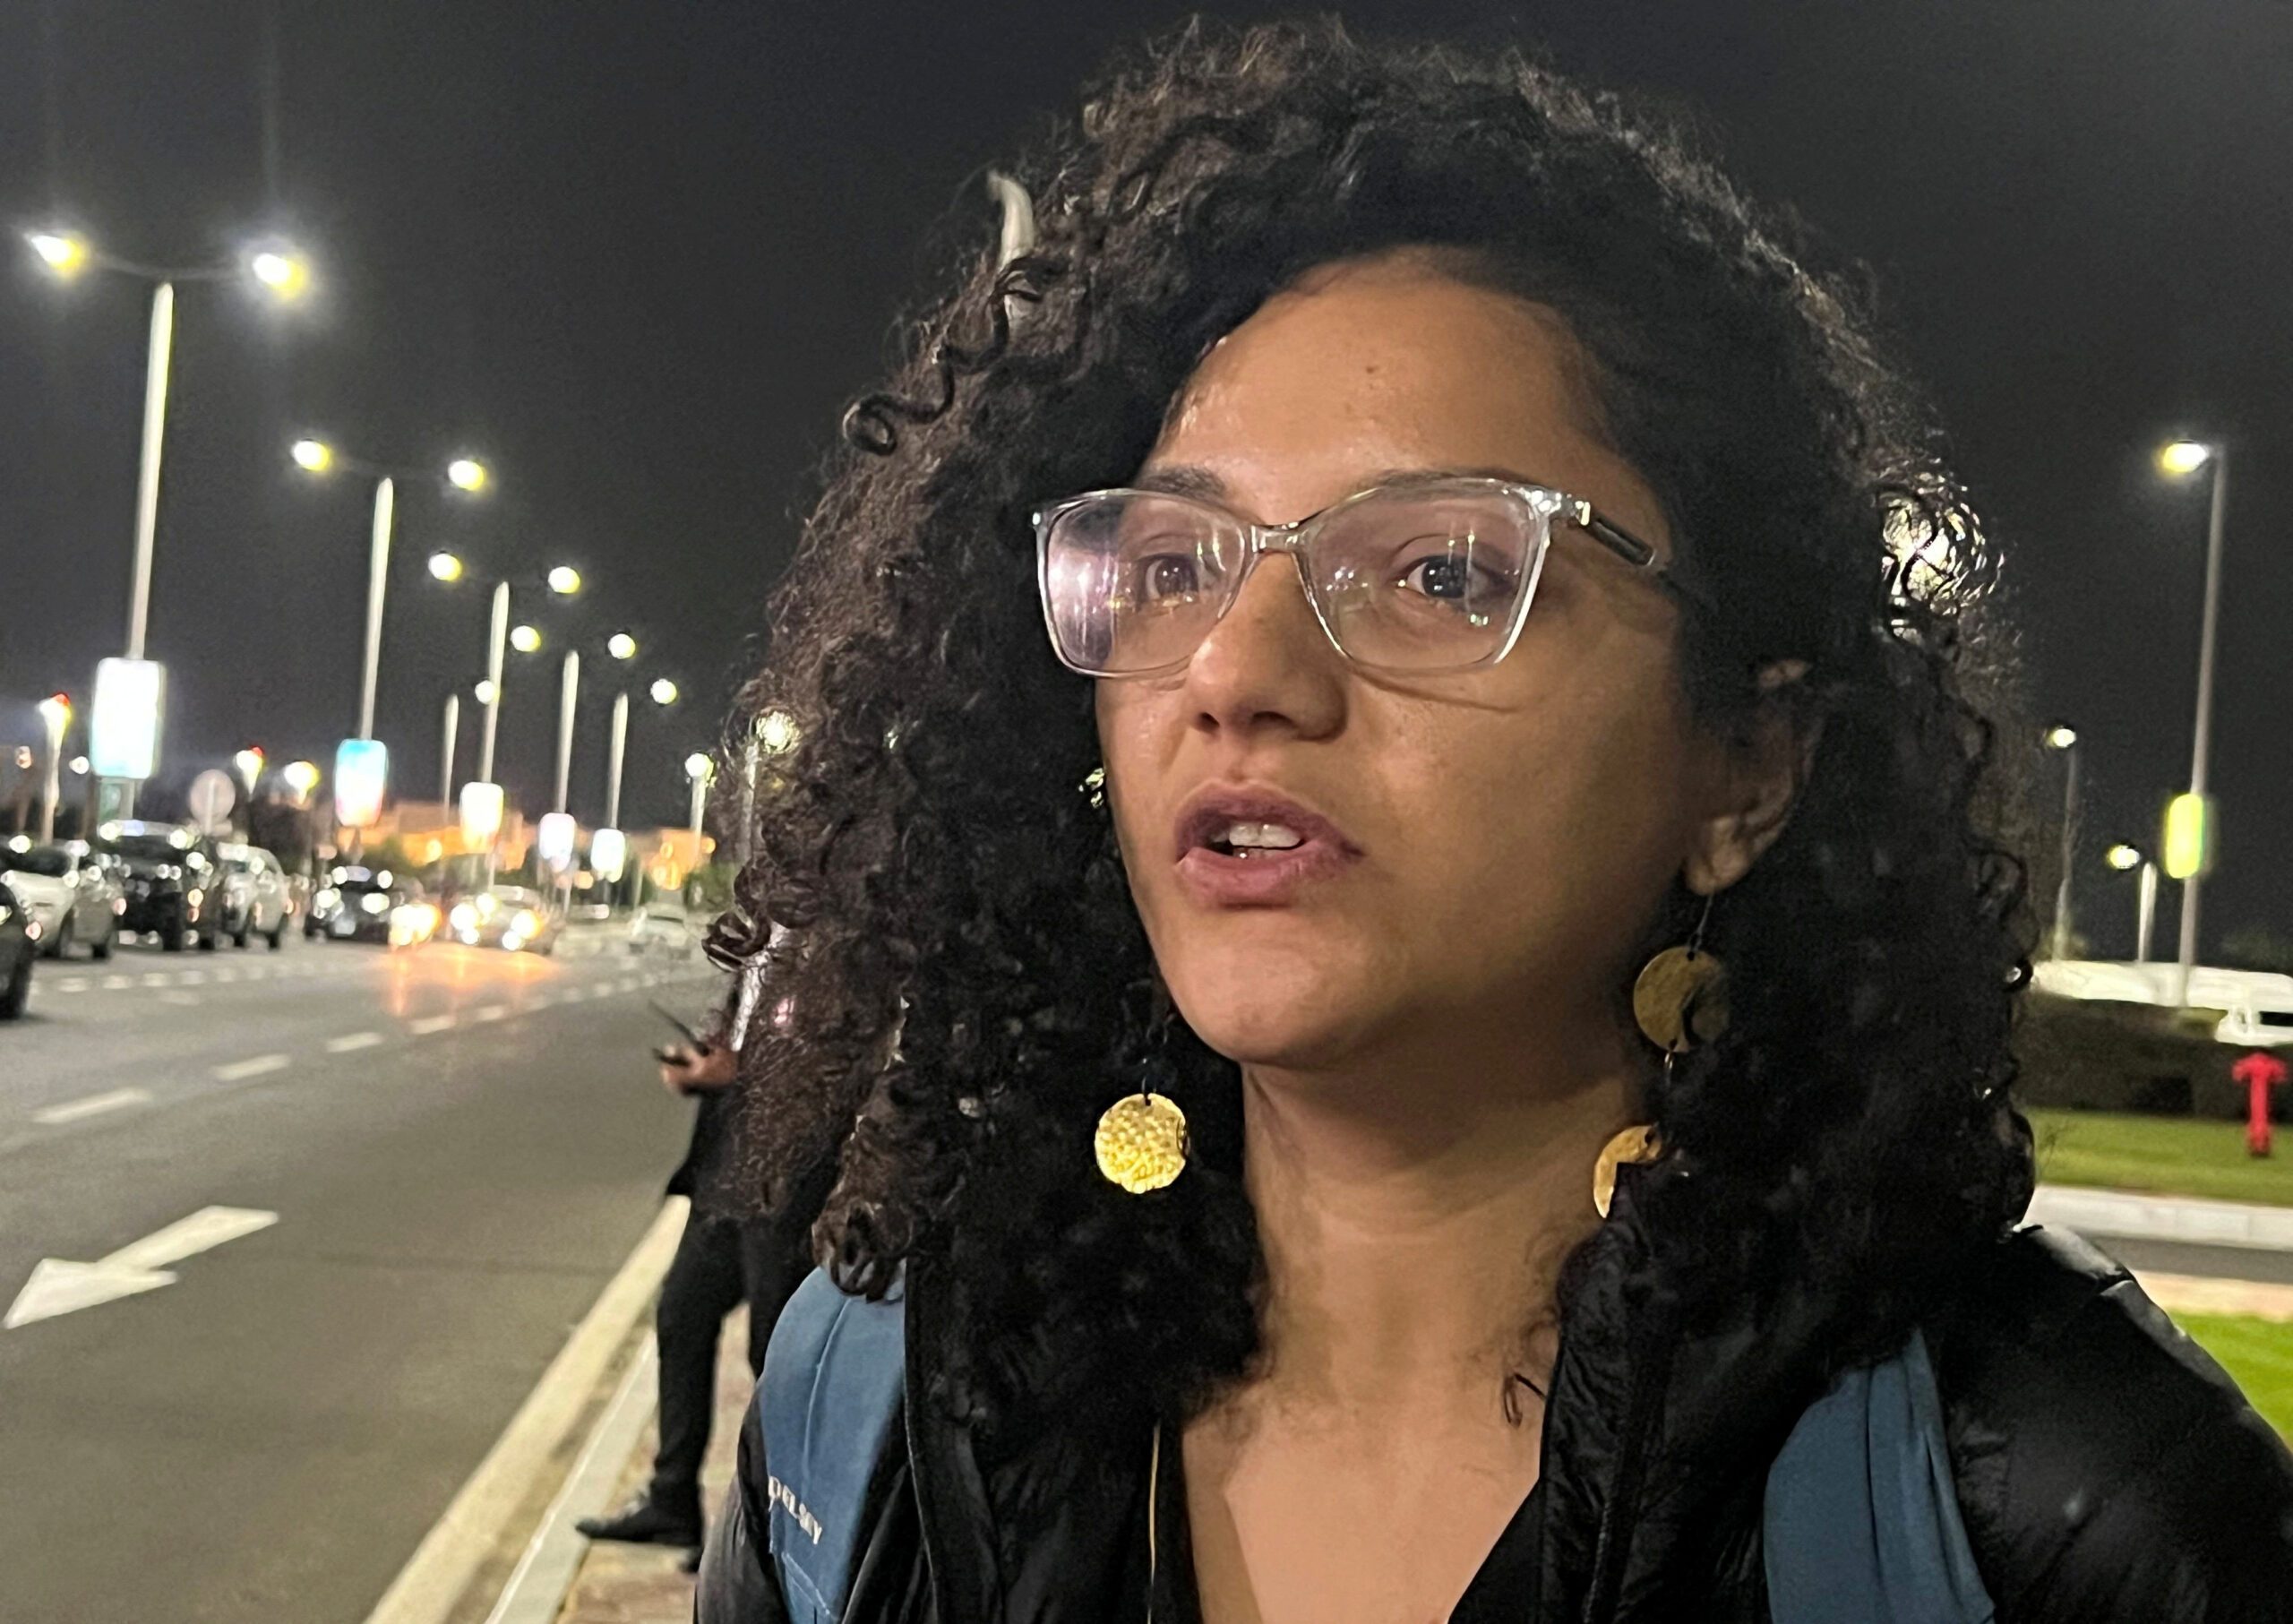 Sister of jailed hunger striker says she has appealed to Egypt president